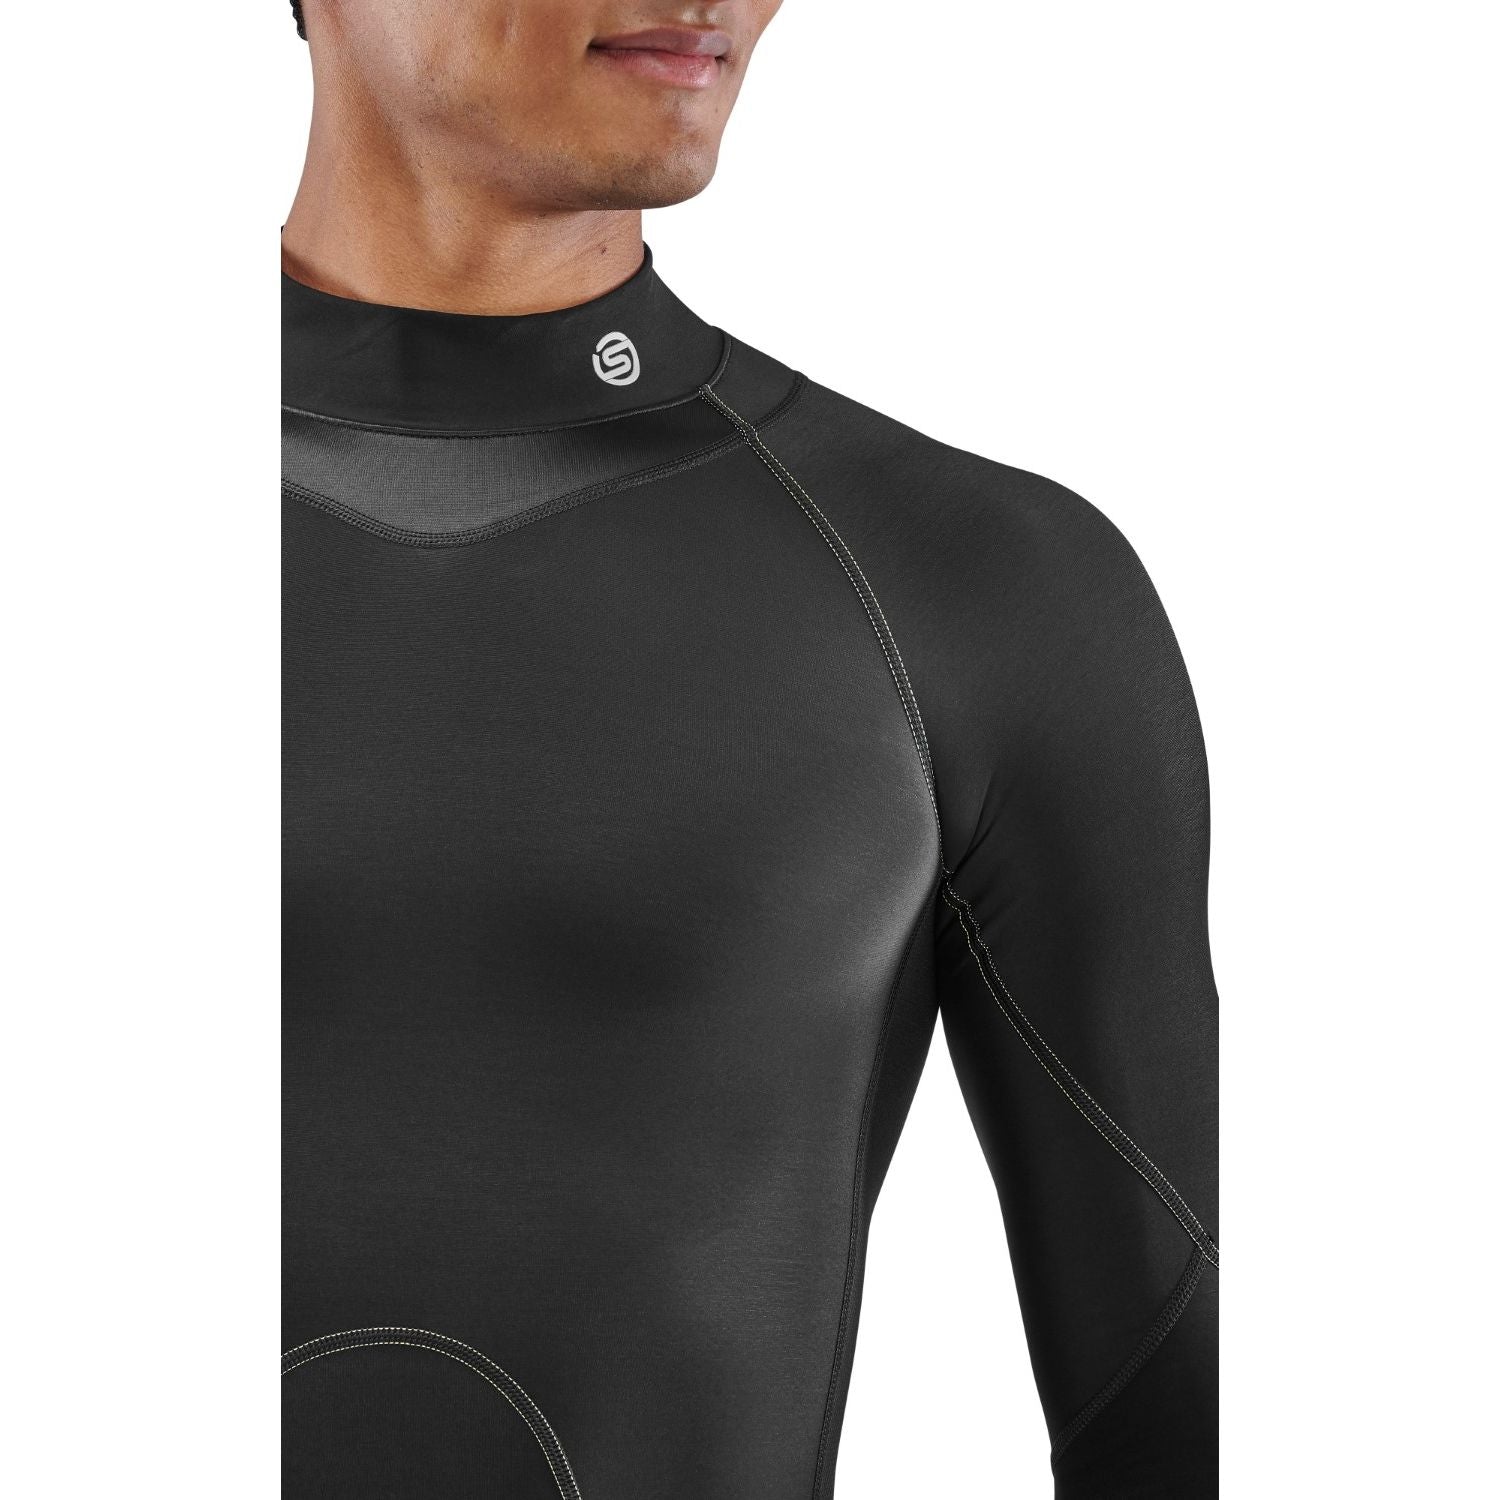 SKINS Men's Series-3 Thermal Long Sleeve Top - Black